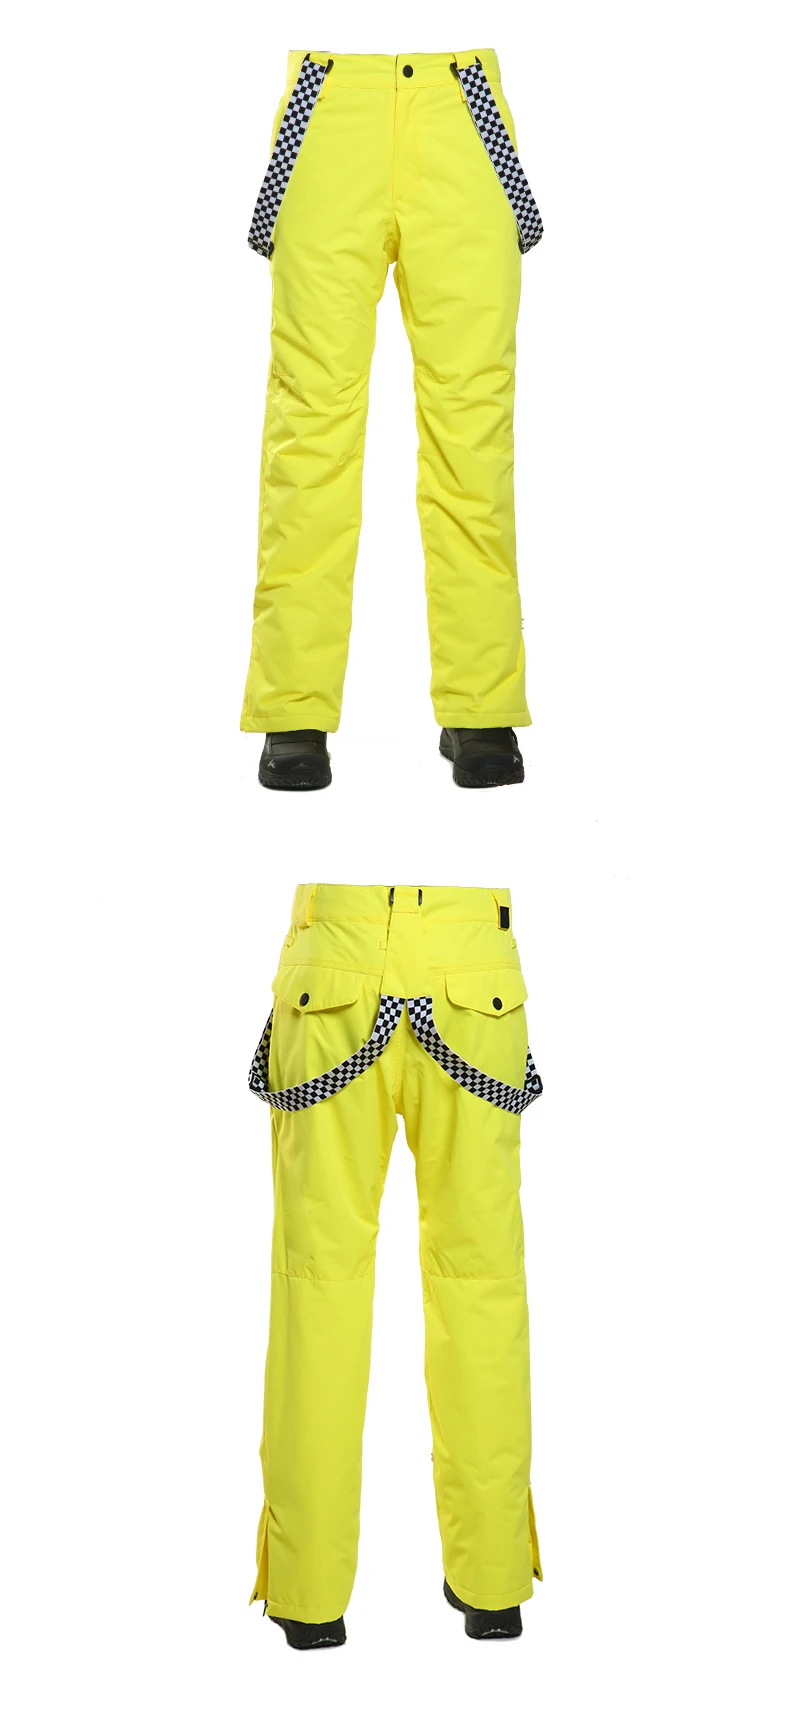 SAENSHING, лыжные брюки для мужчин, зимние уличные штаны, водонепроницаемые, для сноуборда, дышащие, мужские, для катания на горных лыжах, pantlones